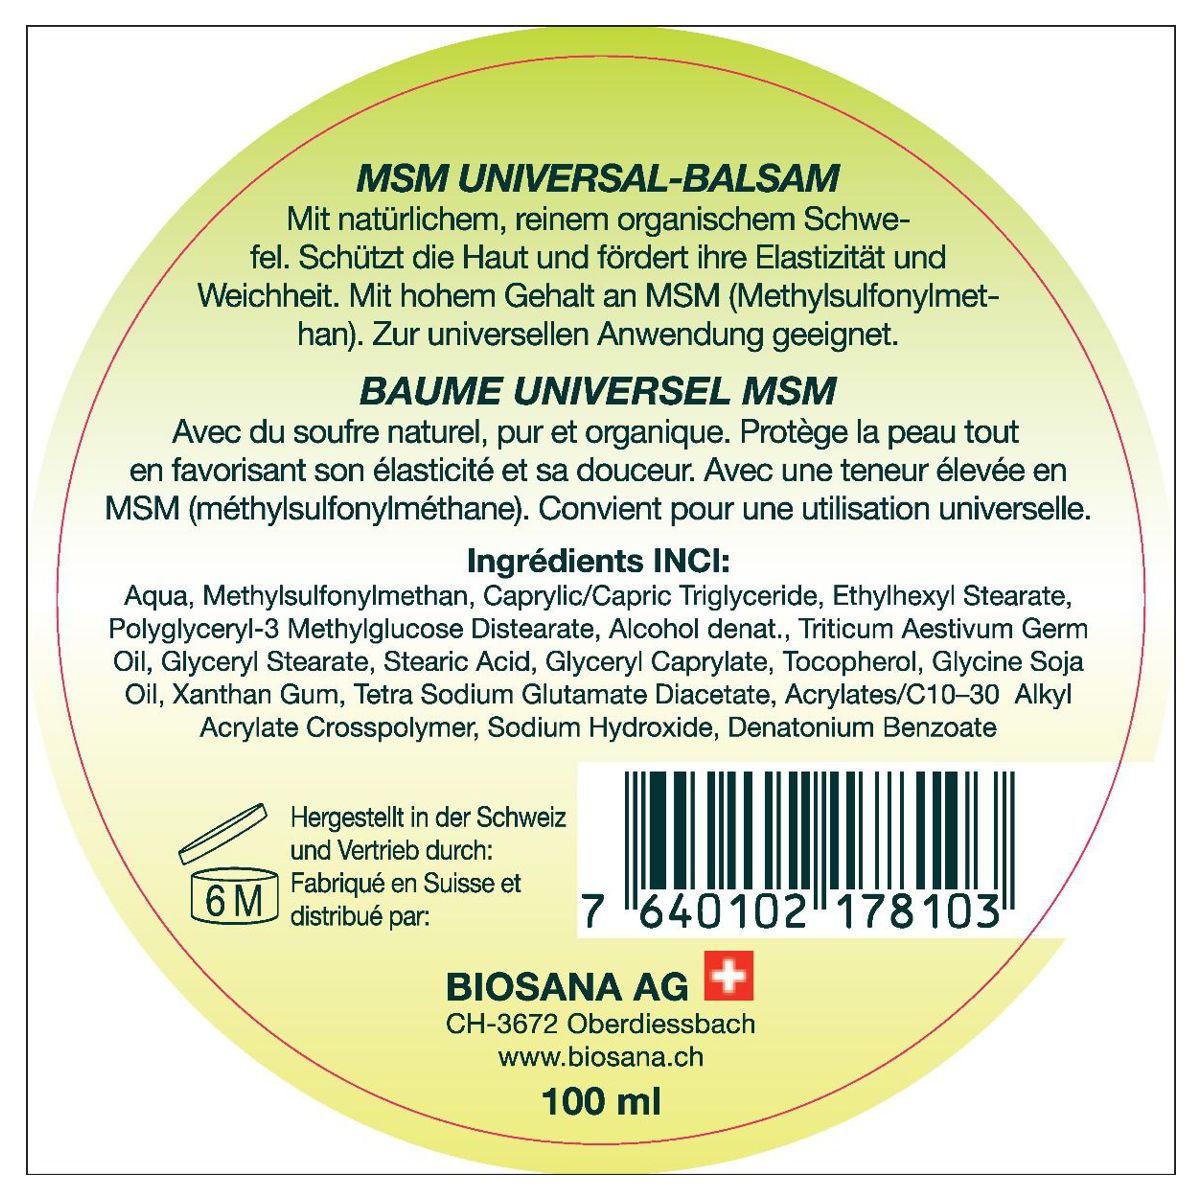 Biosana_MSM_Universal_Balsam_online_kaufen